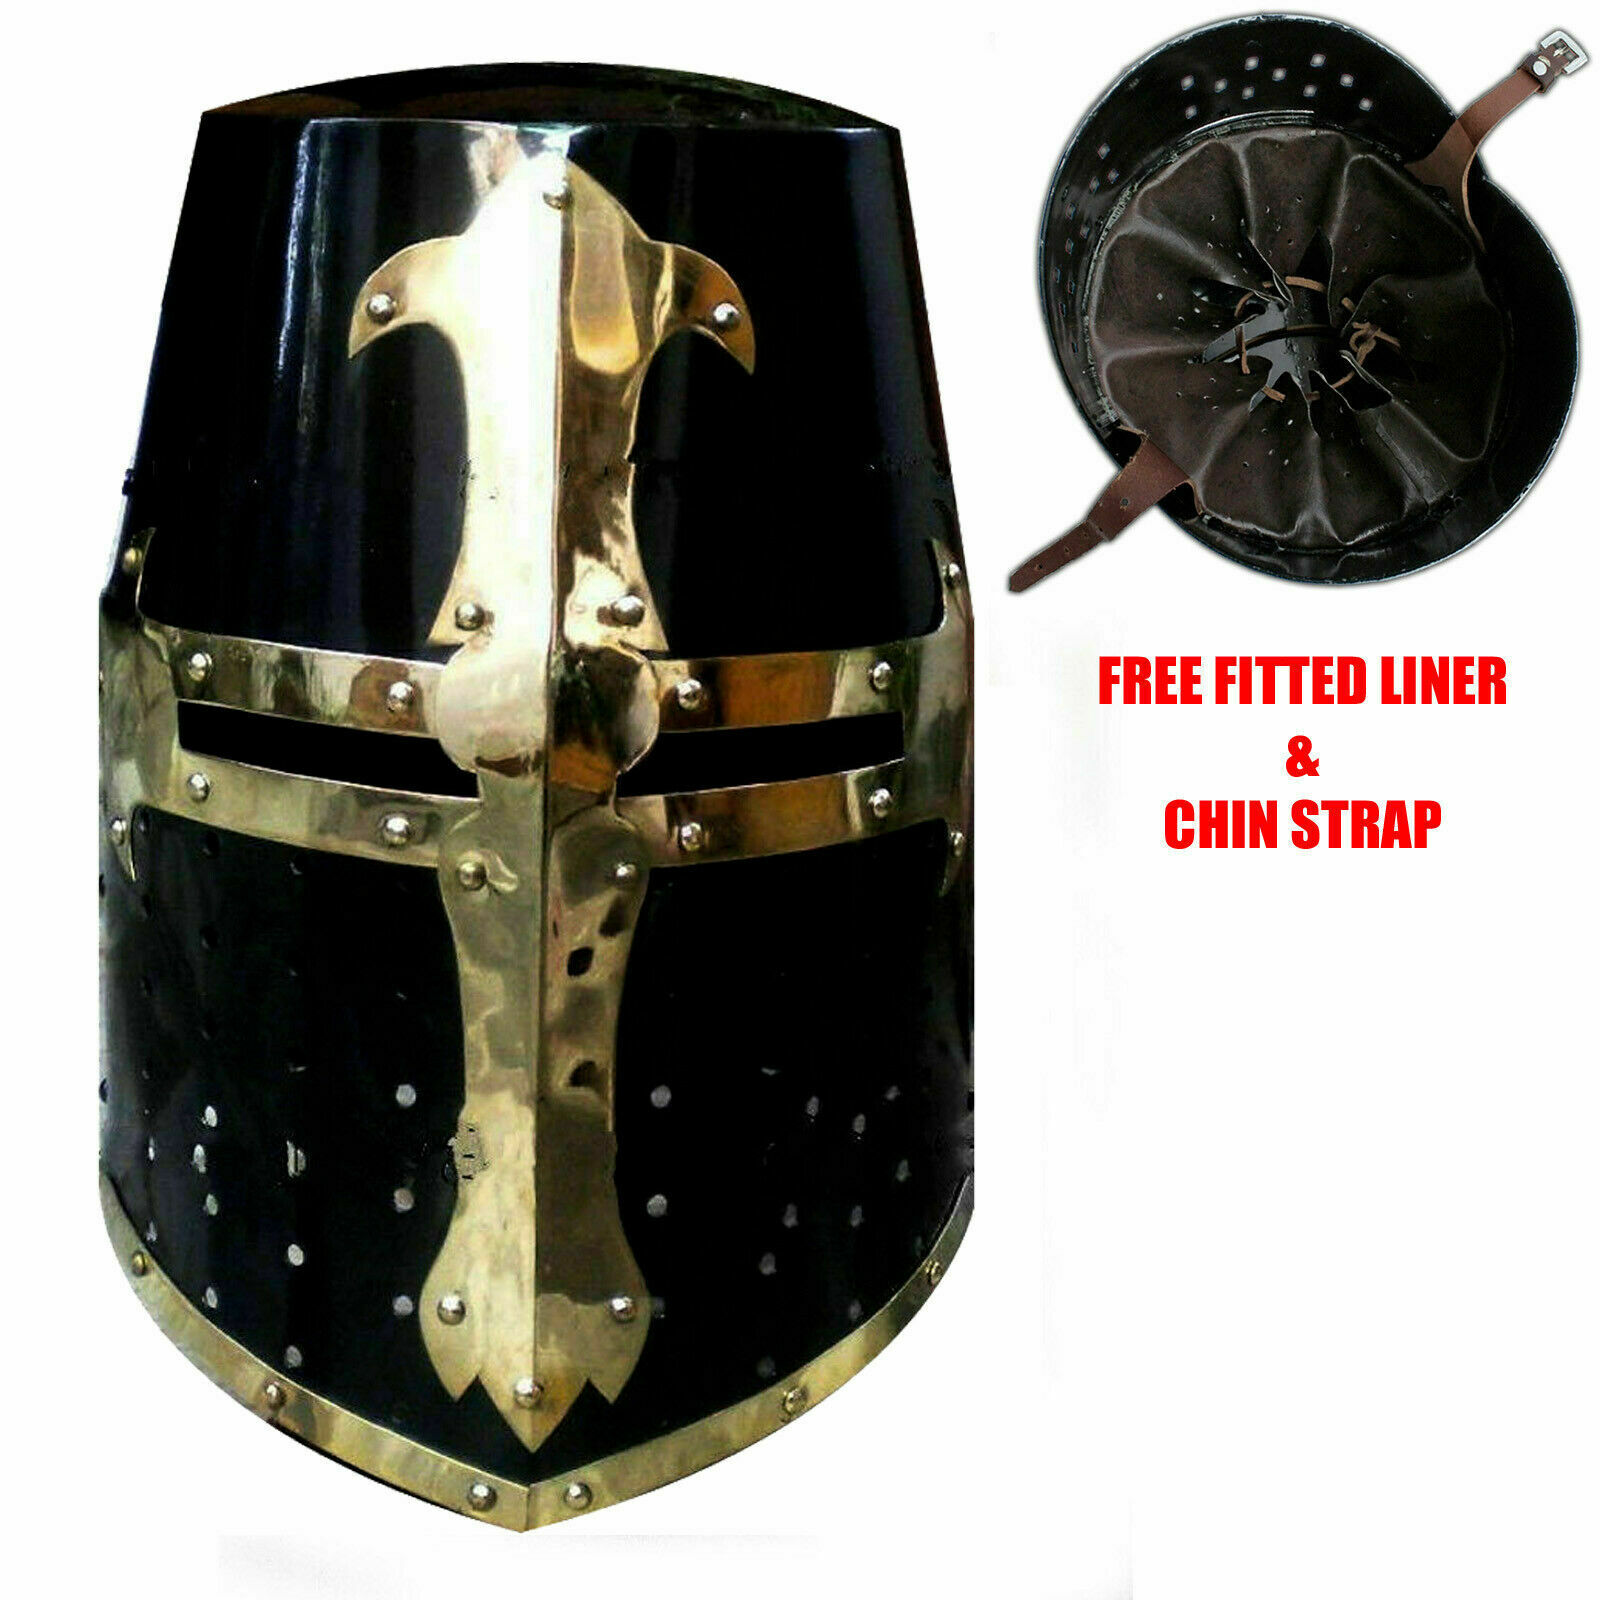 Medieval Knight Armor Crusader New Templar Helmet Helm With Mason's Brass Cross